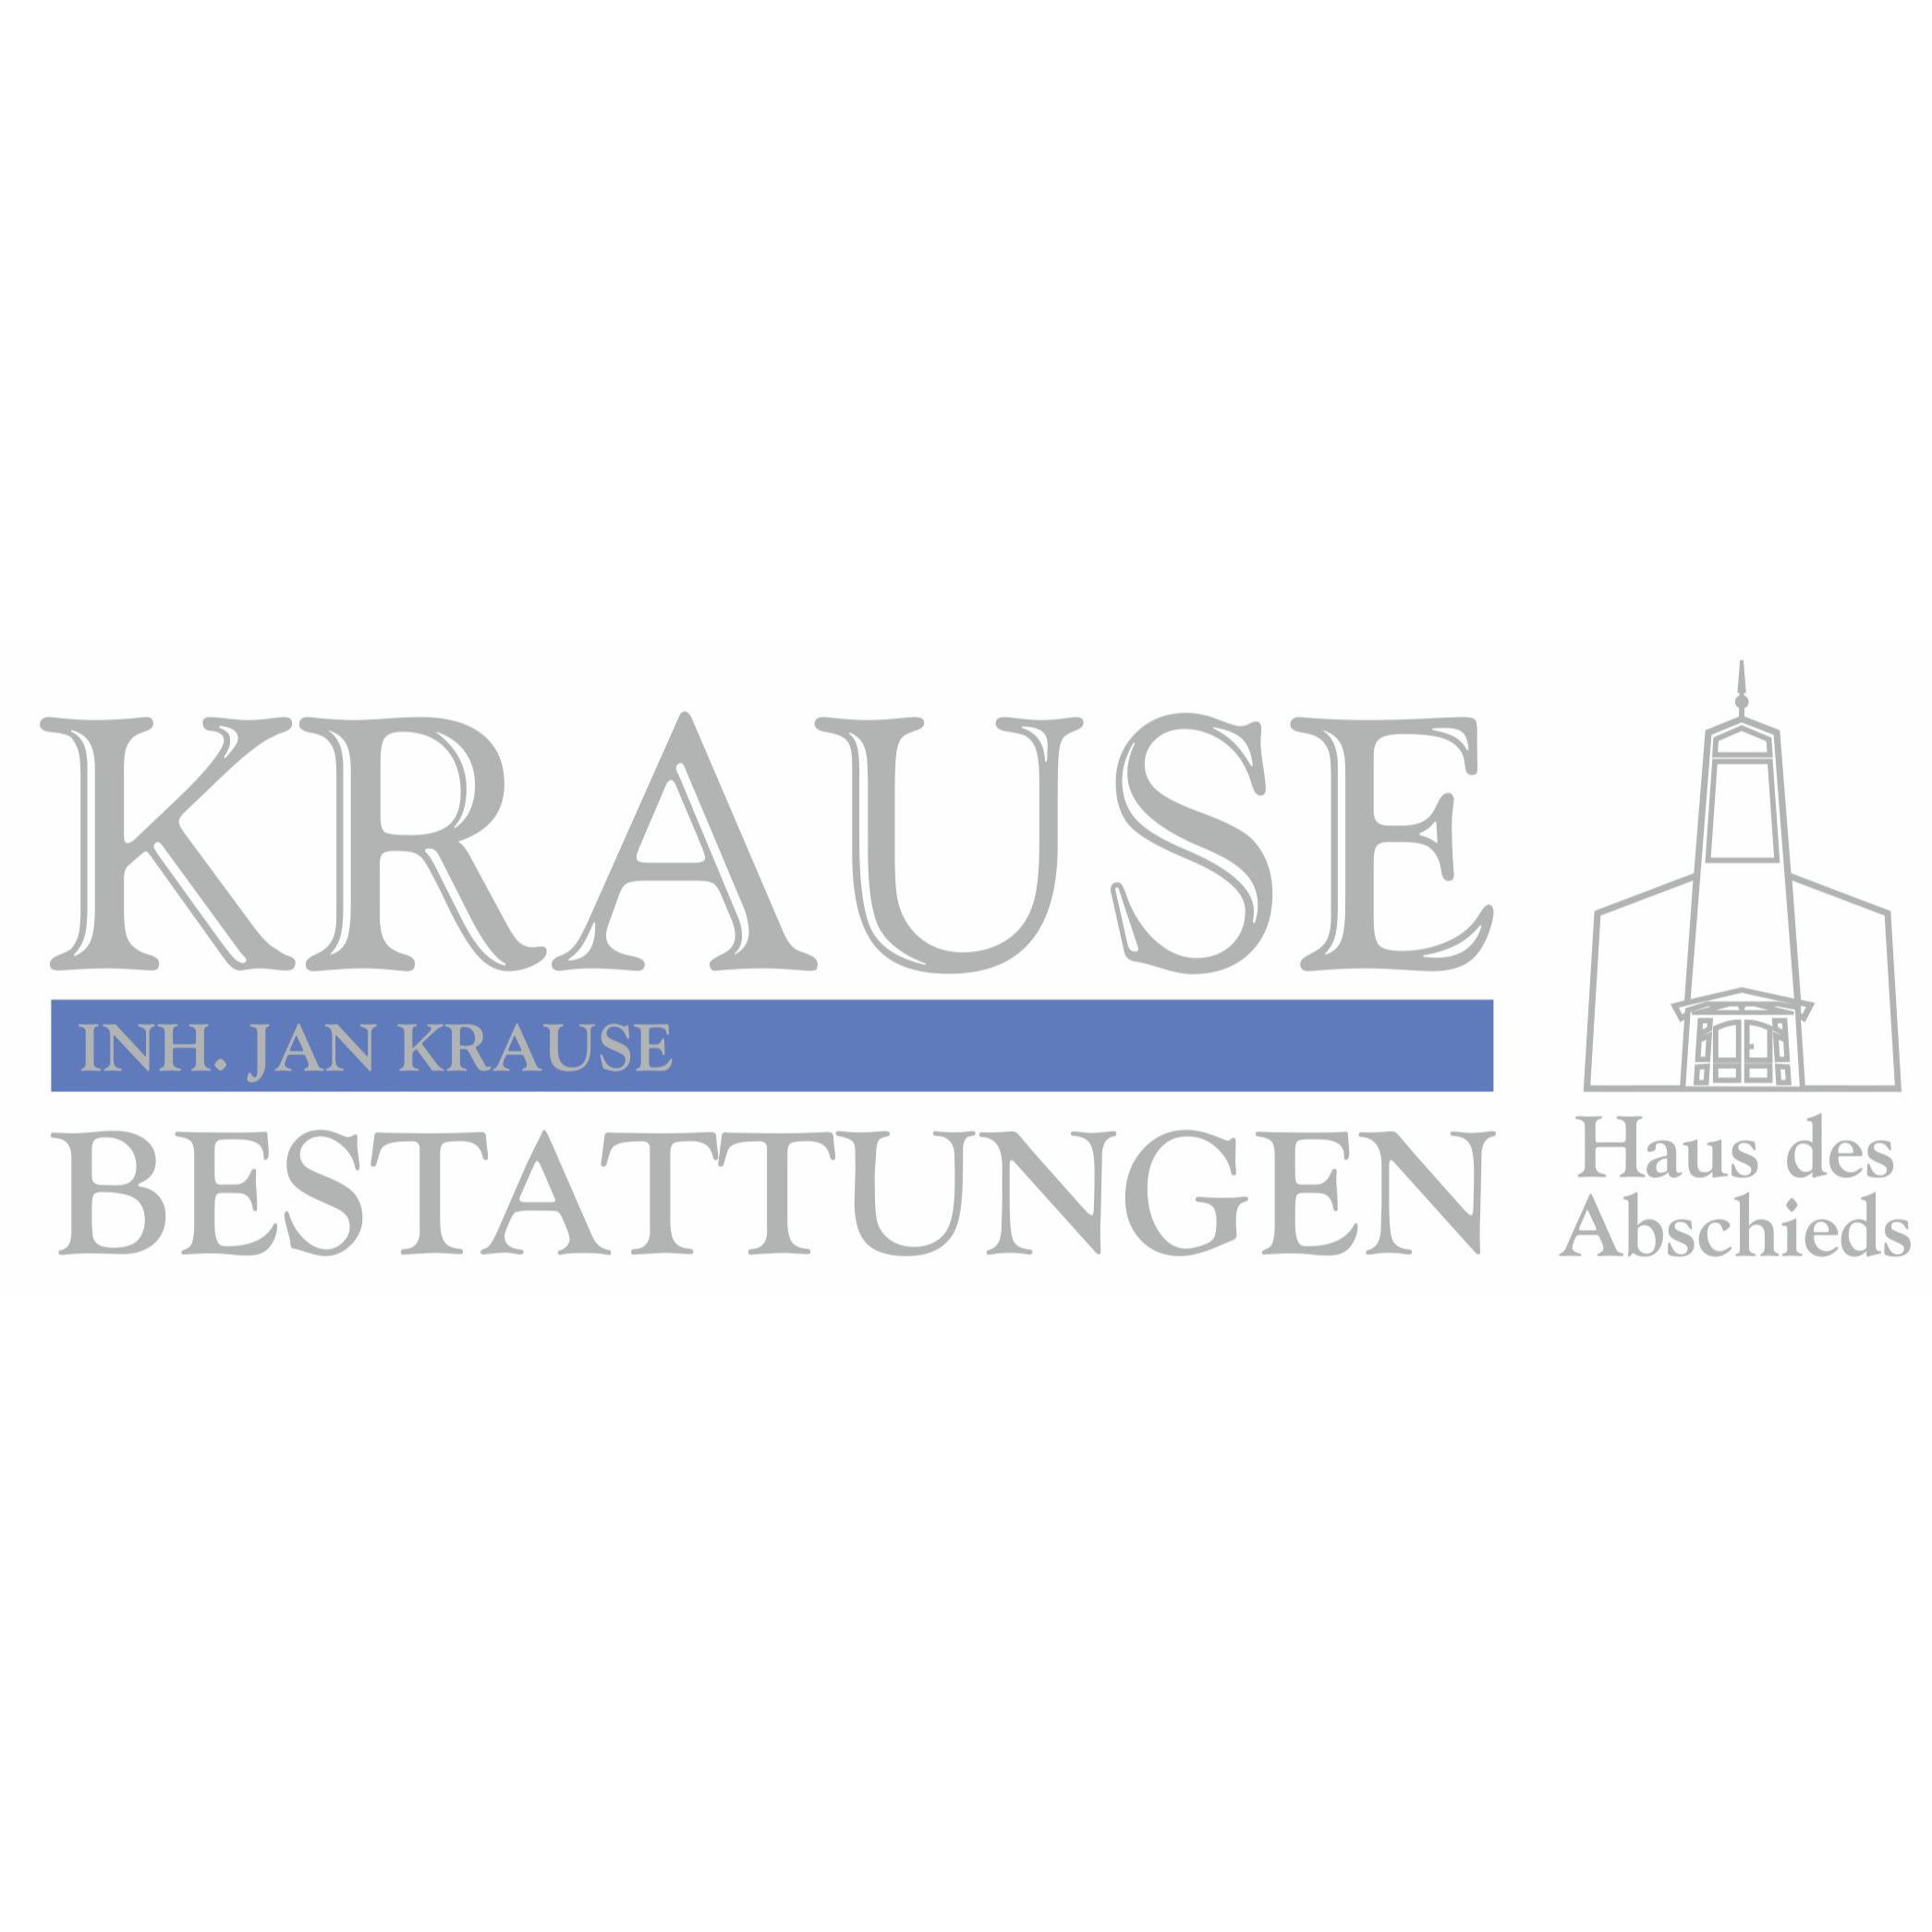 Krause Bestattungen Haus des Abschieds Inh. Jan Krause Logo